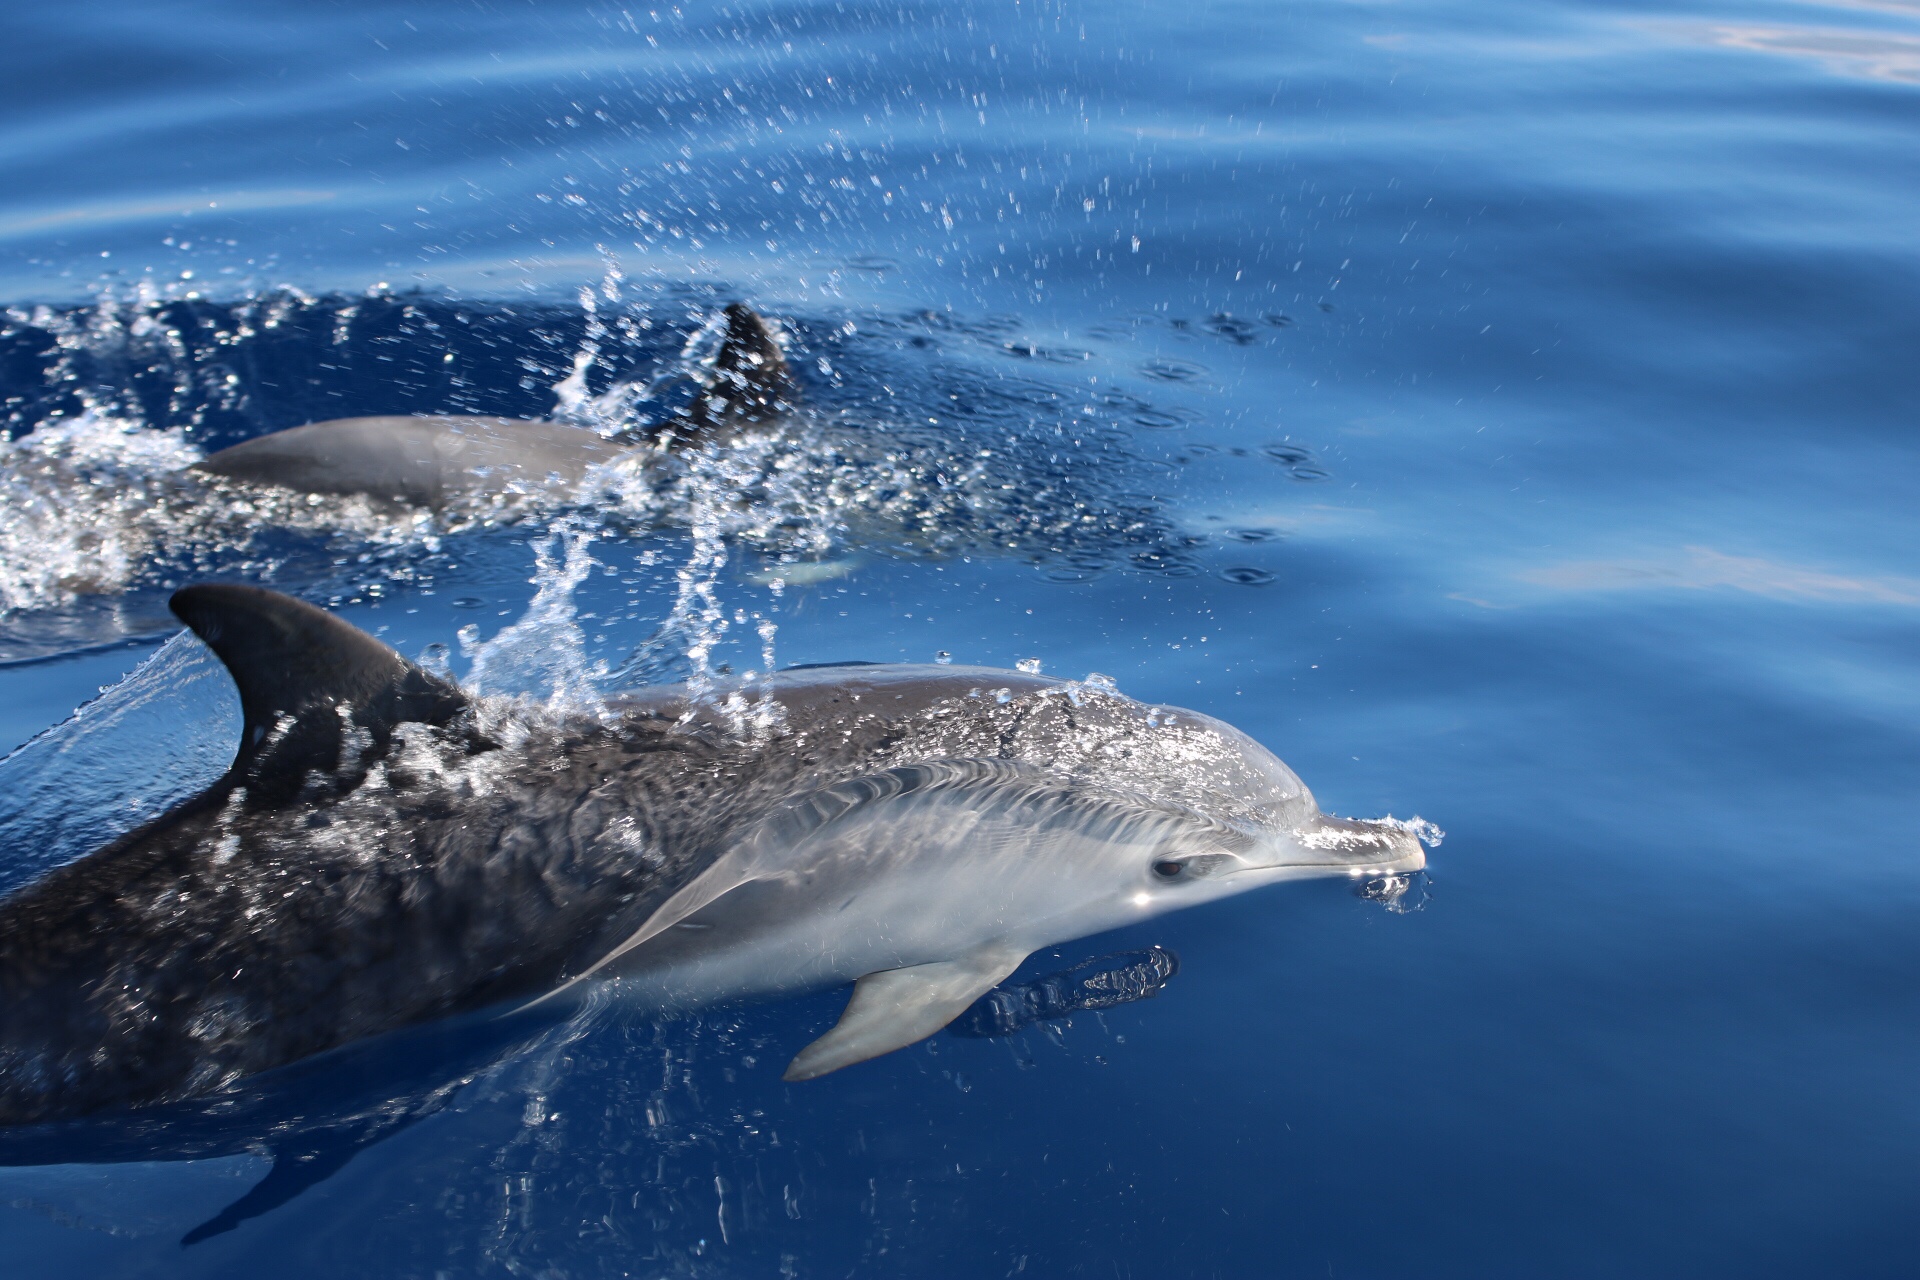 obserwacja delfinów, rejs na delfiny, ocean atlantycki, wycieczki statkiem teneryfa, los cristianos, blog o dzikich zwierzętach, animalistka.pl